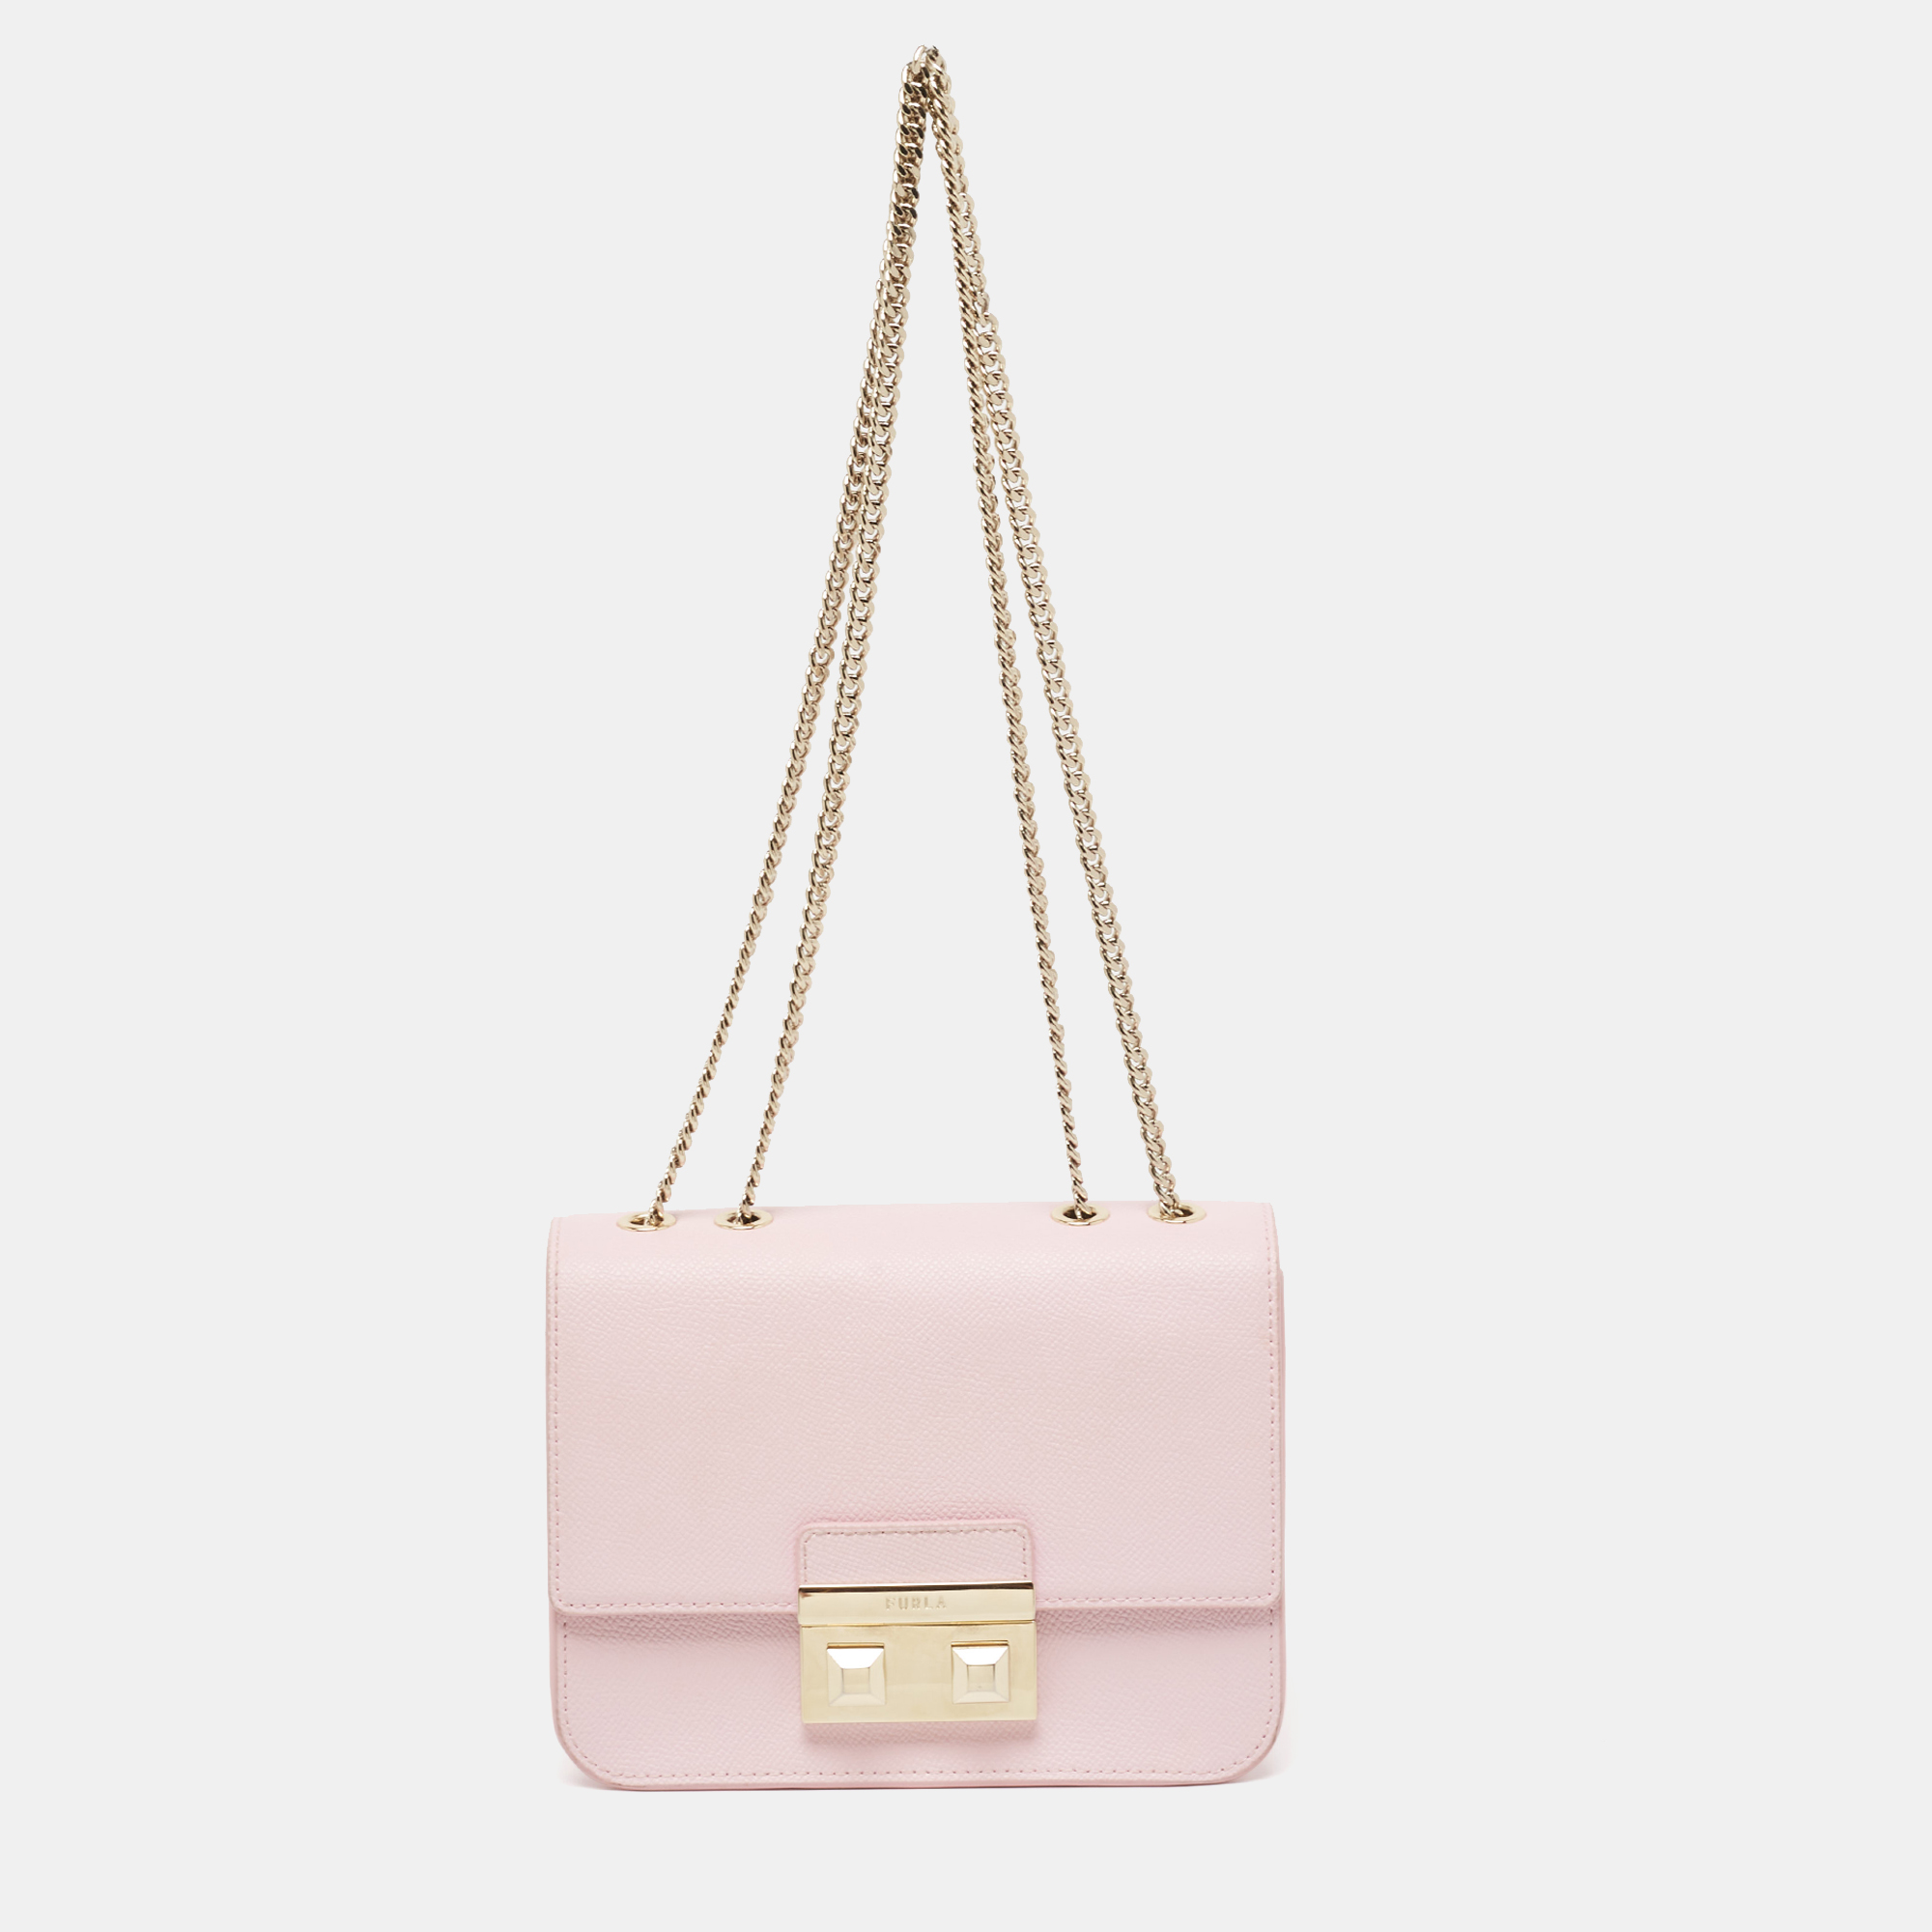 Furla light pink leather bella chain shoulder bag